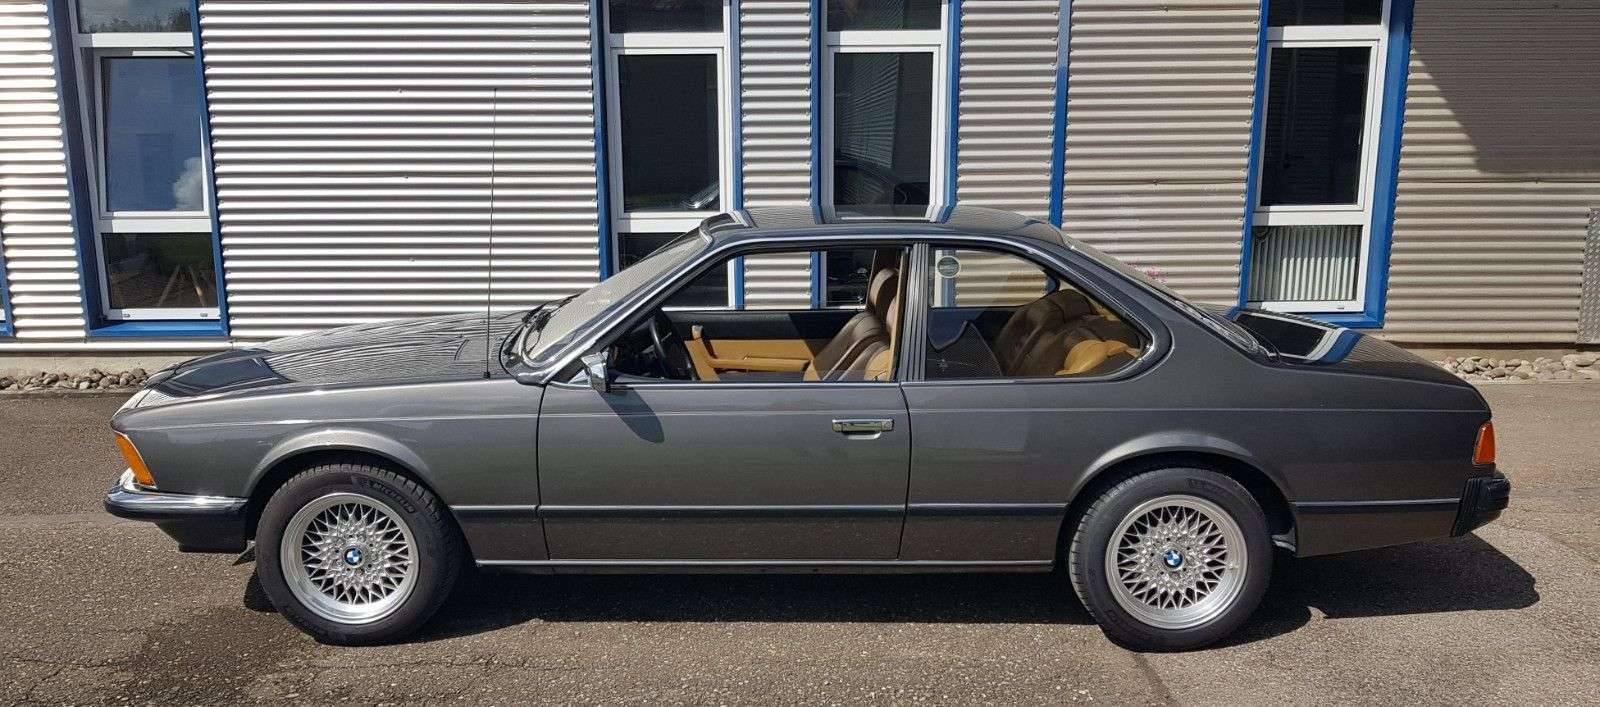 Original BMW Verbandskasten e23 e24 e28 735i 745i 633i 635i csi